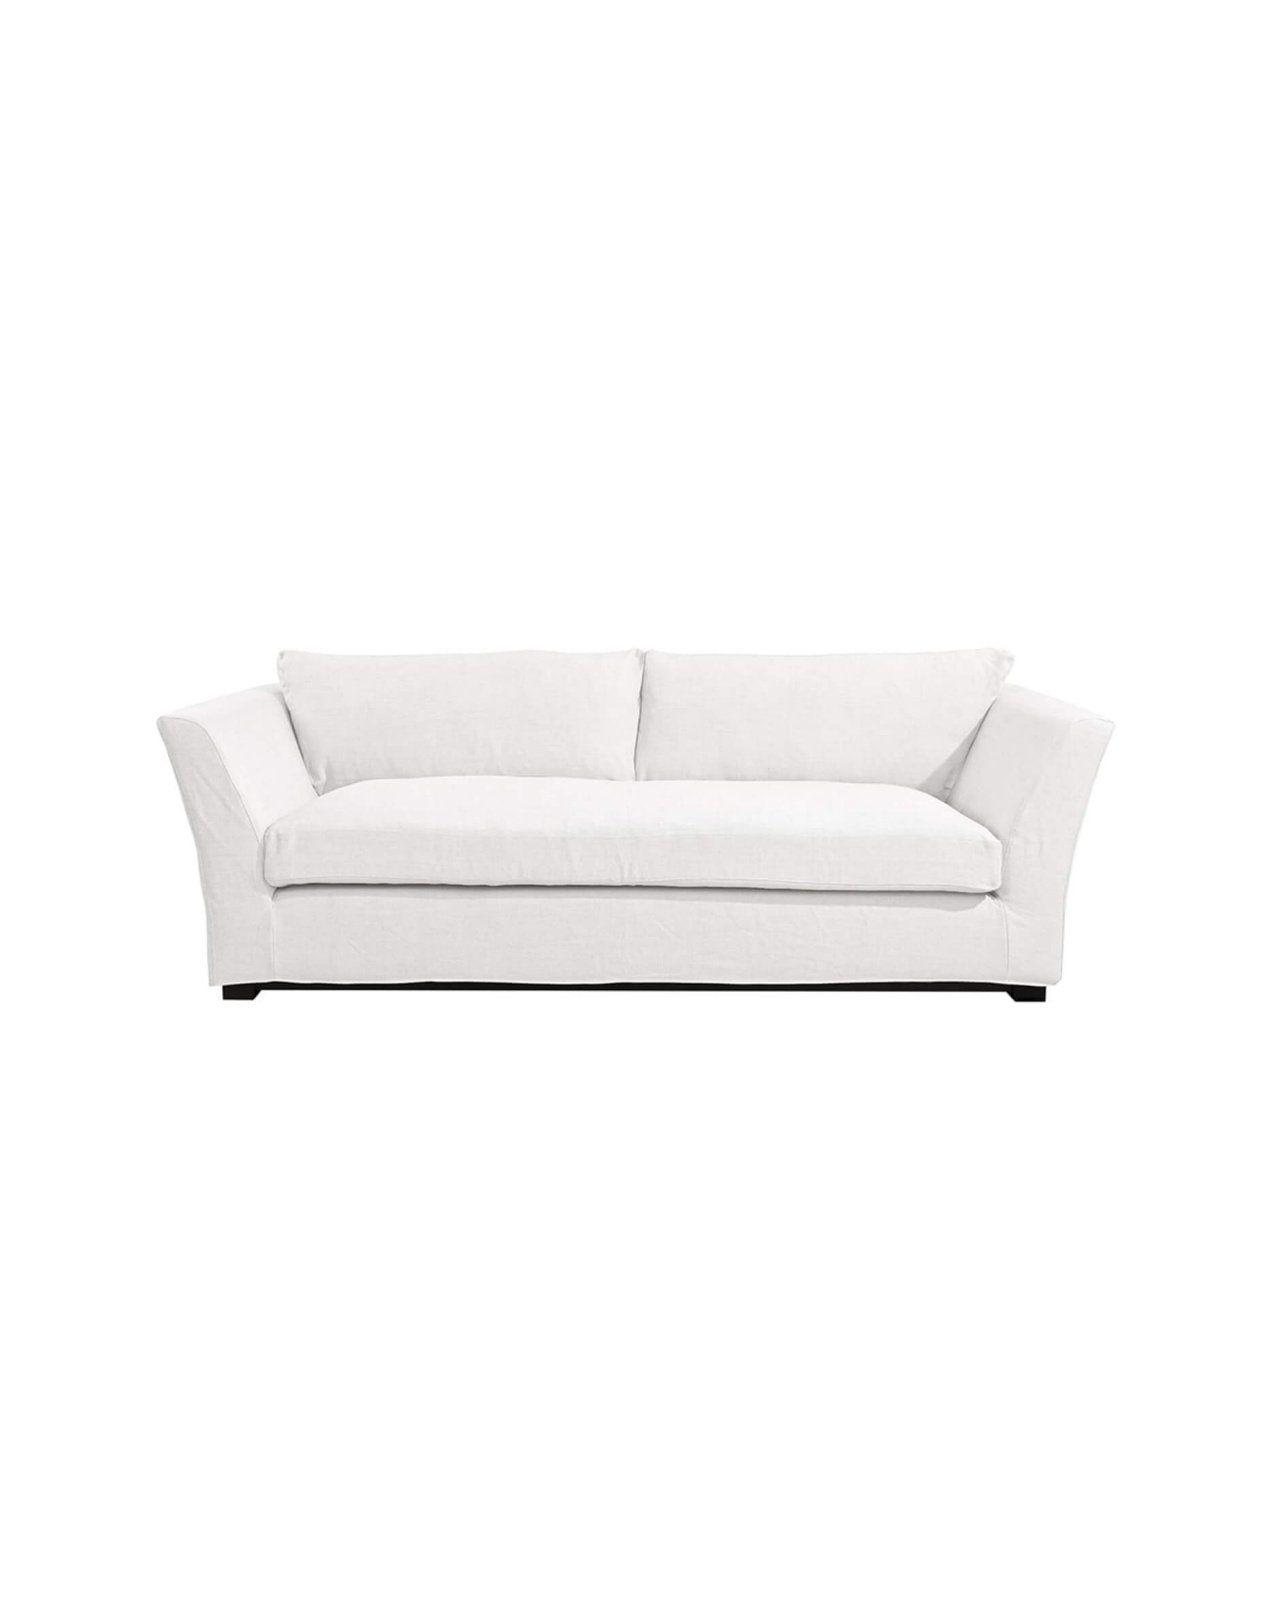 Stafford sofa tobago white